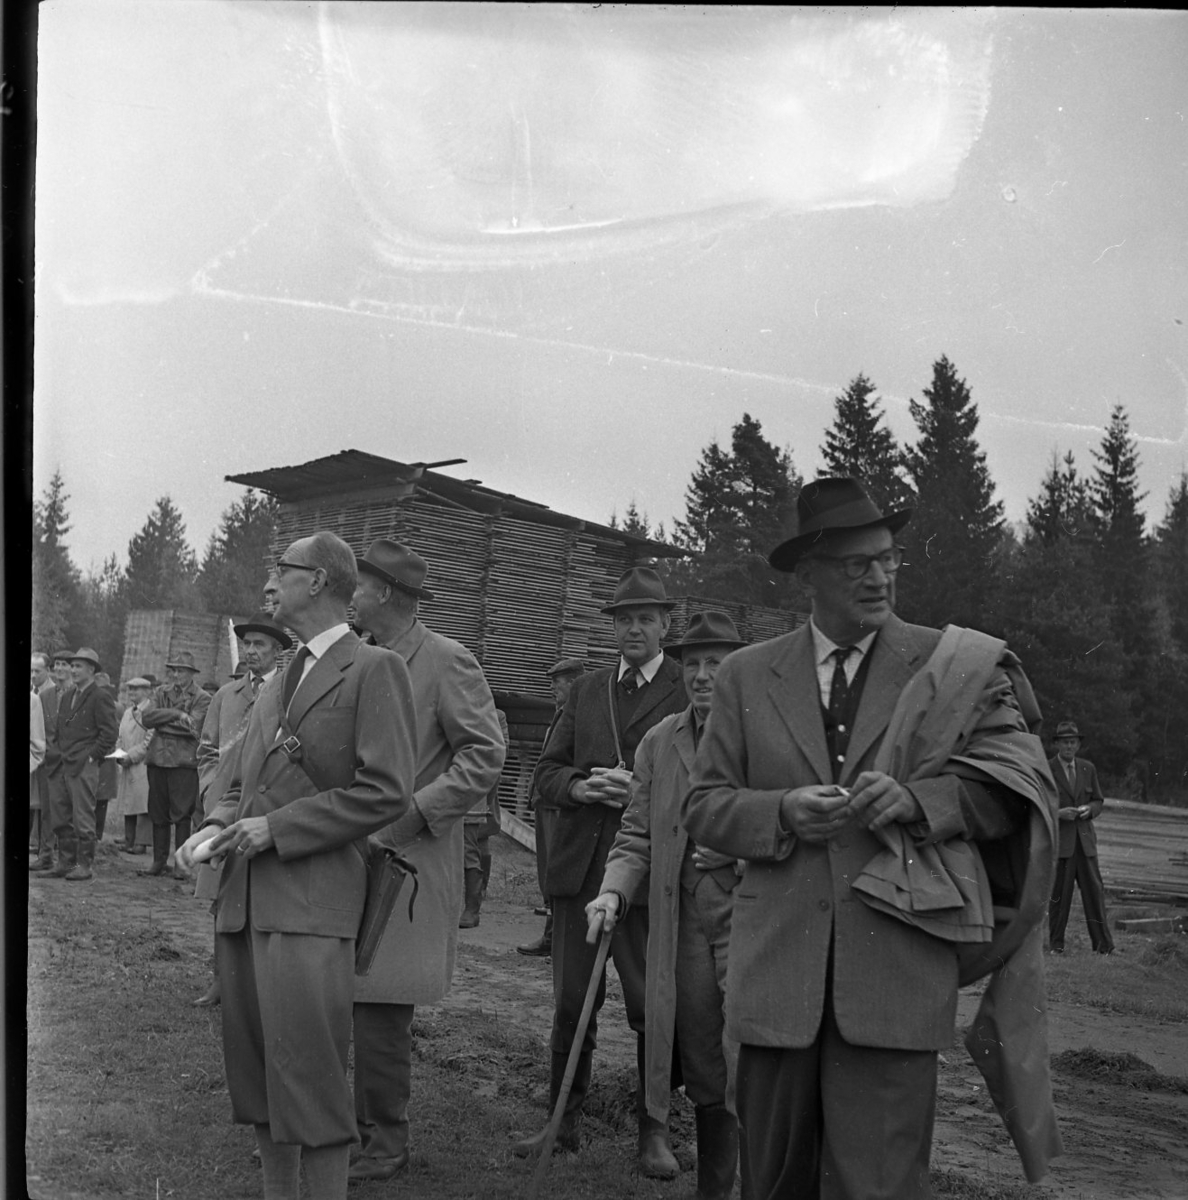 Skogsdag Örserums brunn 1961. Framför en brädgård står några män. De tittar sig omkring. Vissa av dem bär hatt. En man håller i en käpp. Skogen skymtar i bakgrunden.